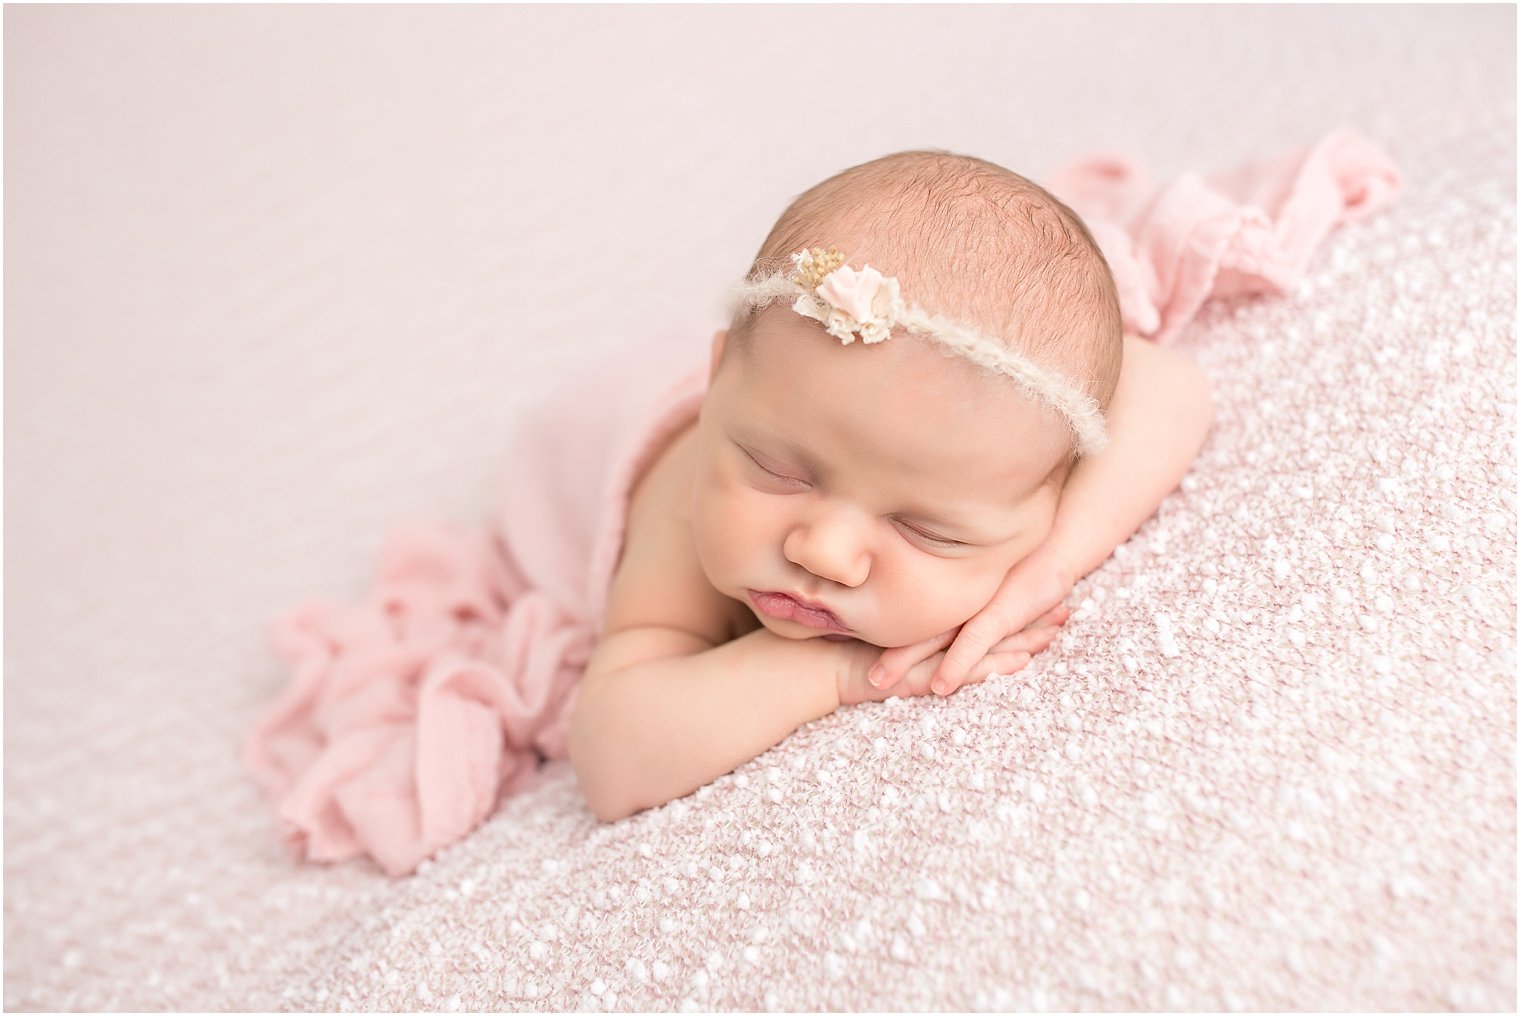 Newborn on pink blanket